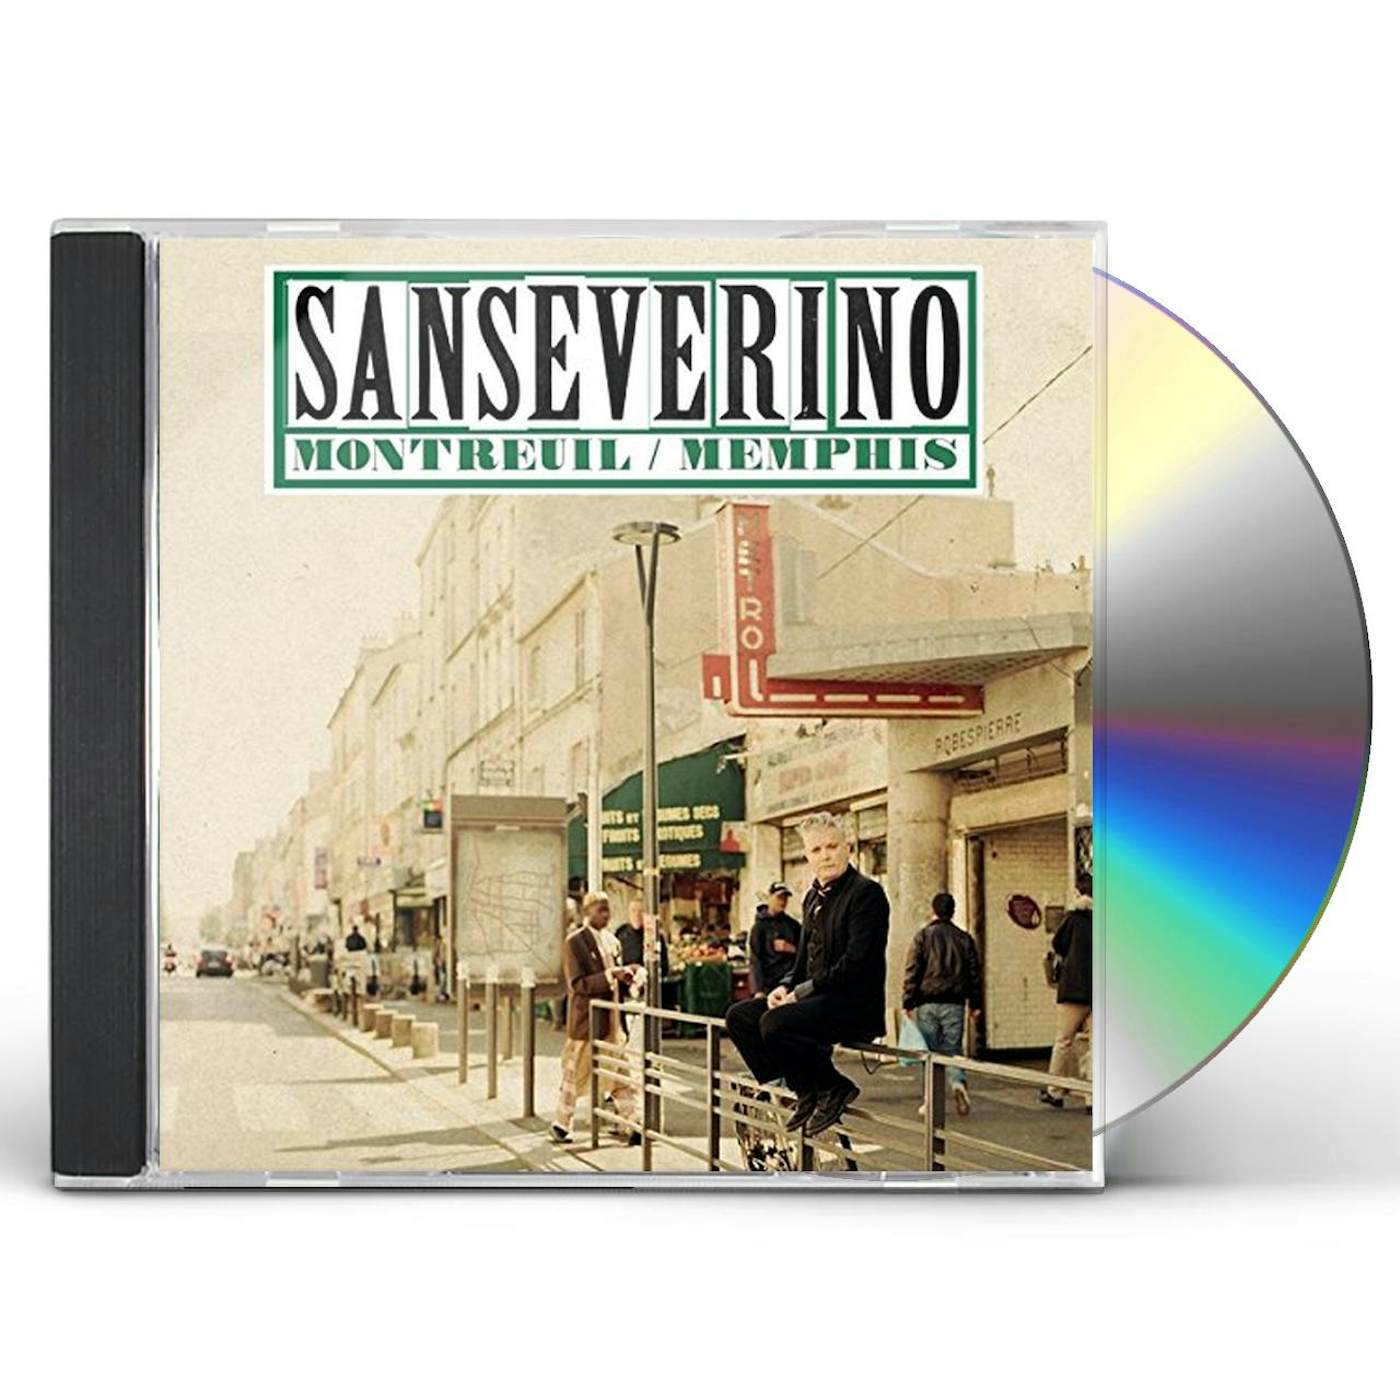 Sanseverino MONTREUIL / MEMPHIS CD